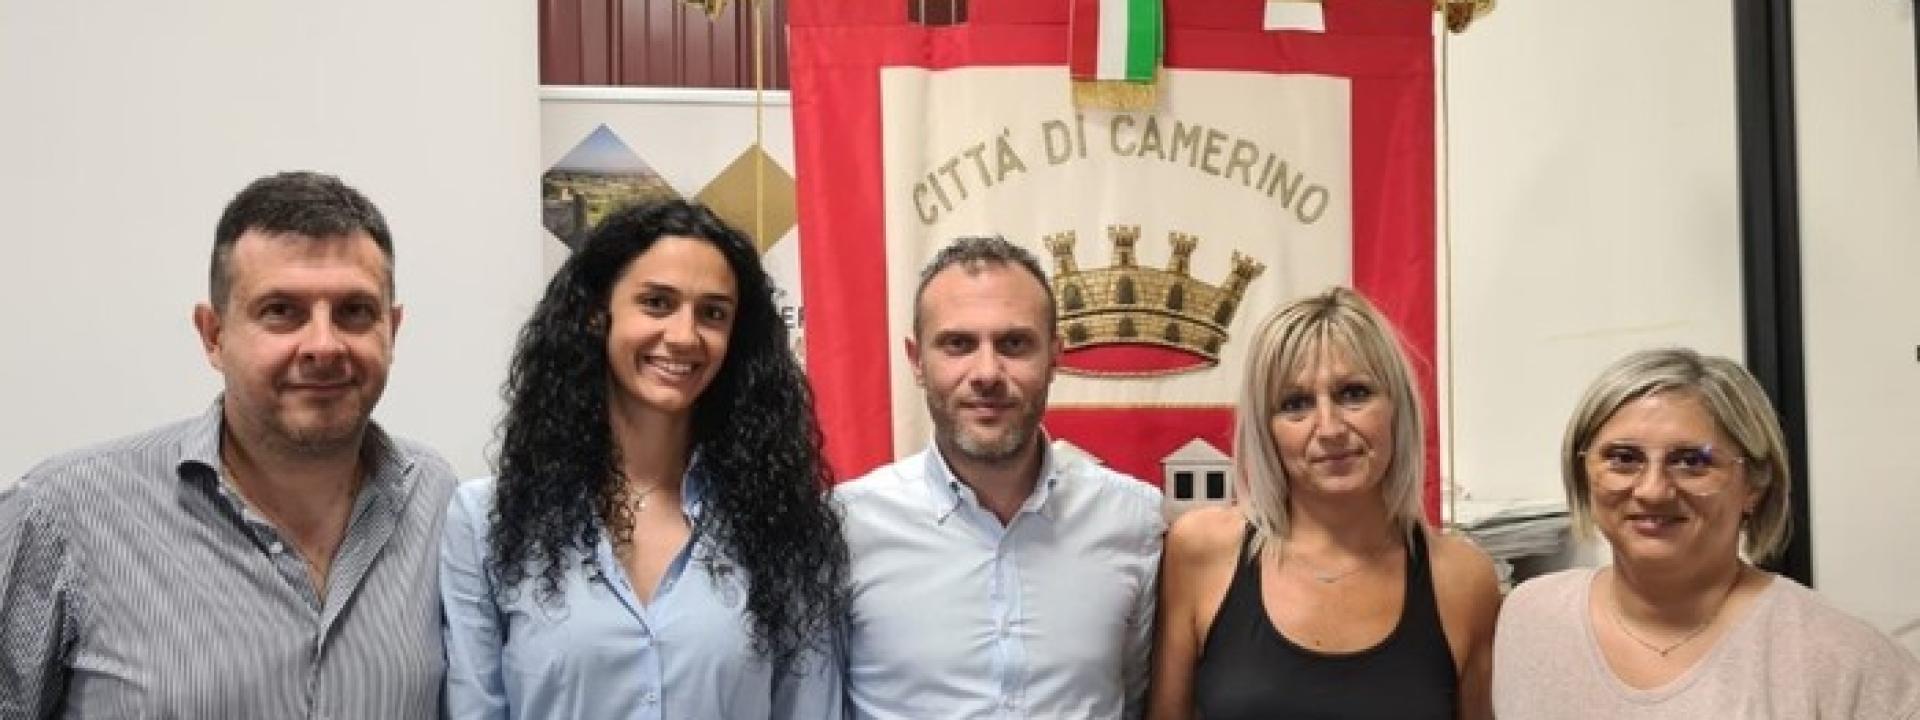 Marche - Camerino, il sindaco Lucarelli nomina gli assessori